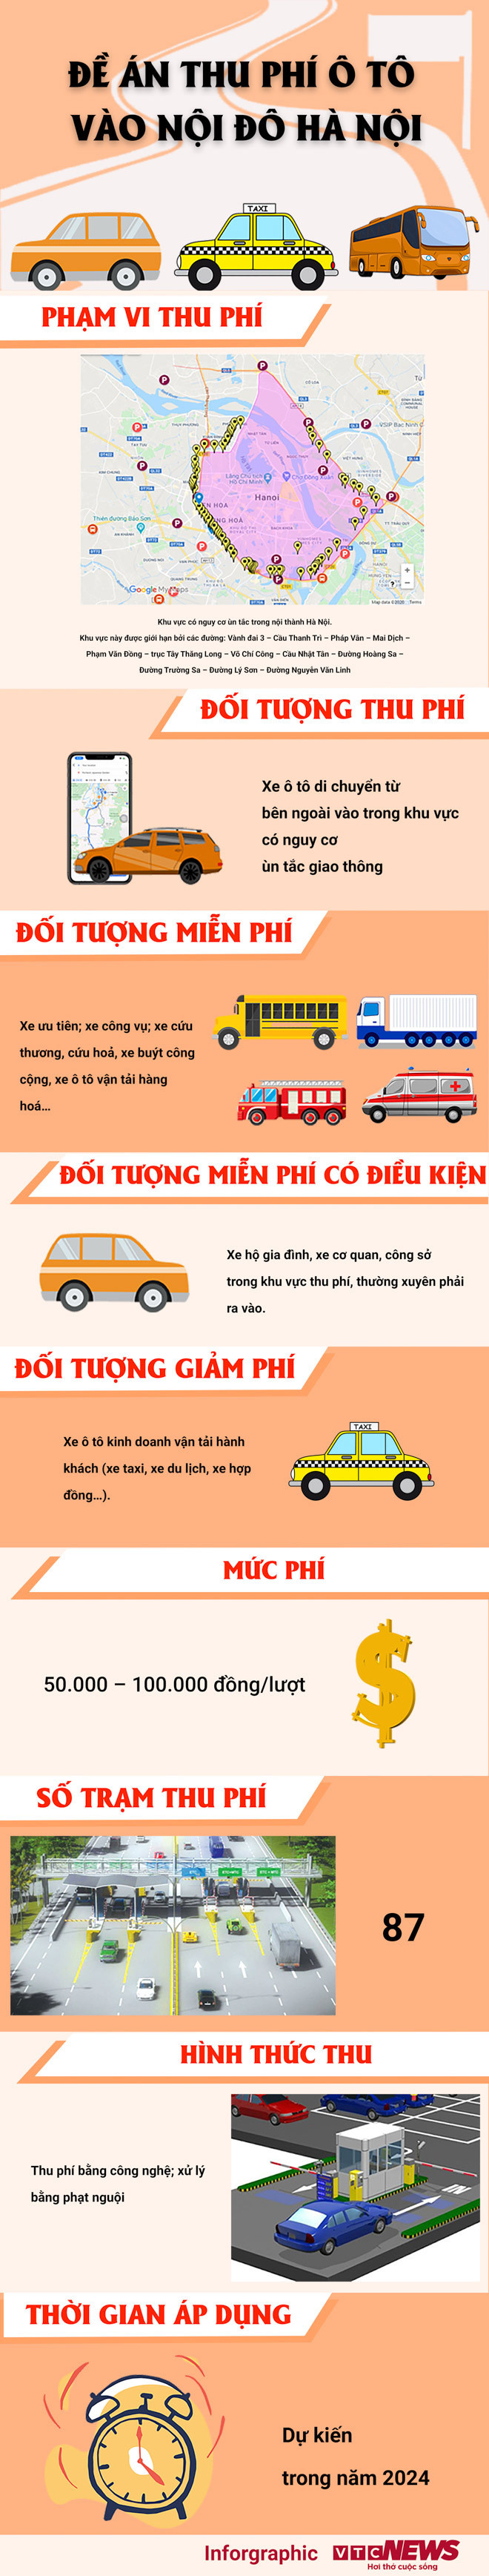 Infographic: Chi tiết đề án thu phí ô tô vào nội đô Hà Nội - 1